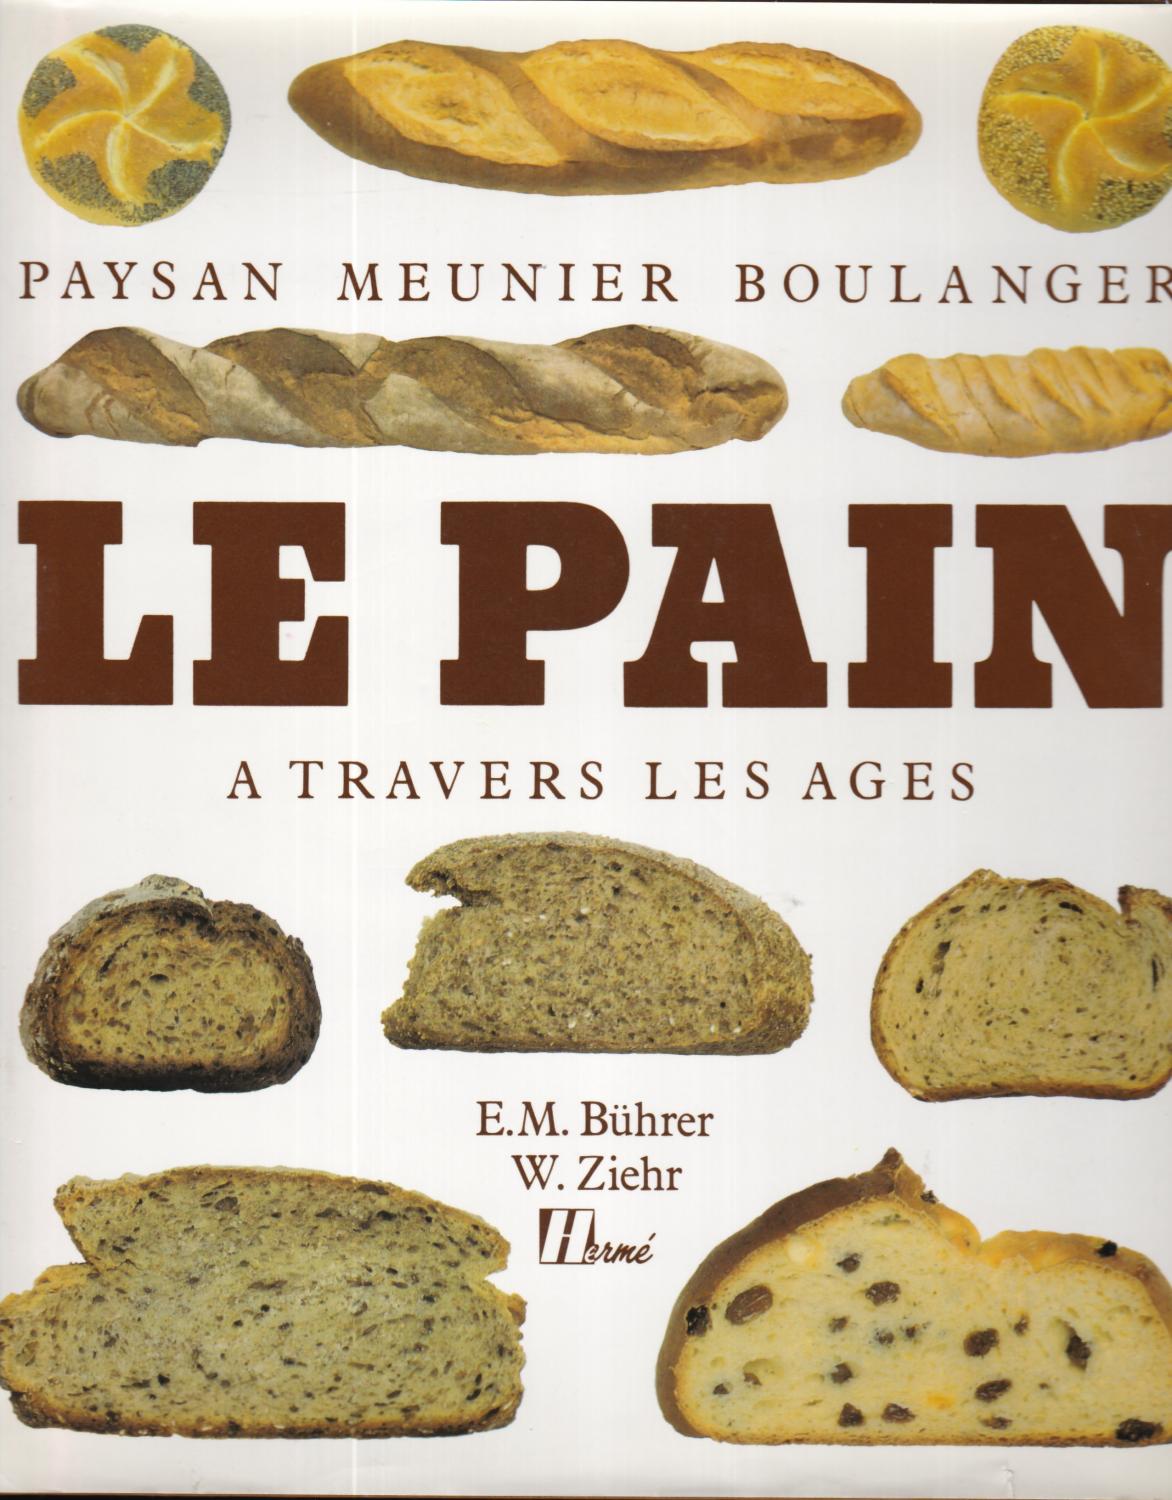 Le Pain : Paysan, meunier, boulanger à travers les âges - Emil Buhrer, W Ziehr